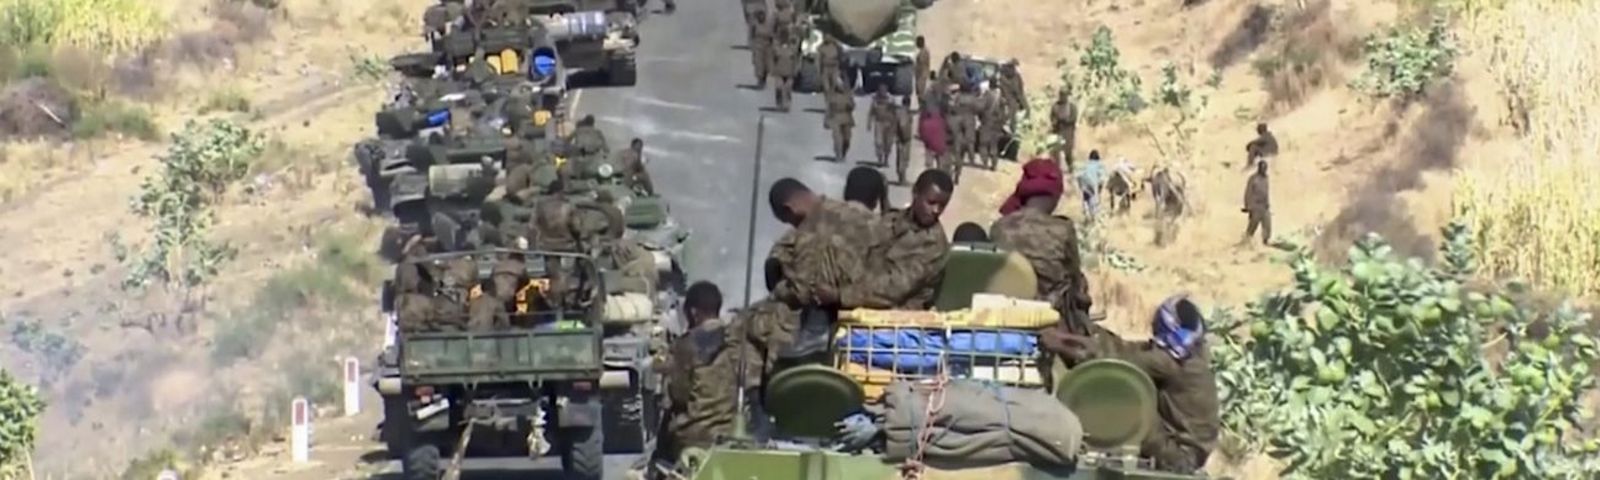 Athiopien Am Rande Eines Burgerkrieges Schweizerische Fluchtlingshilfe